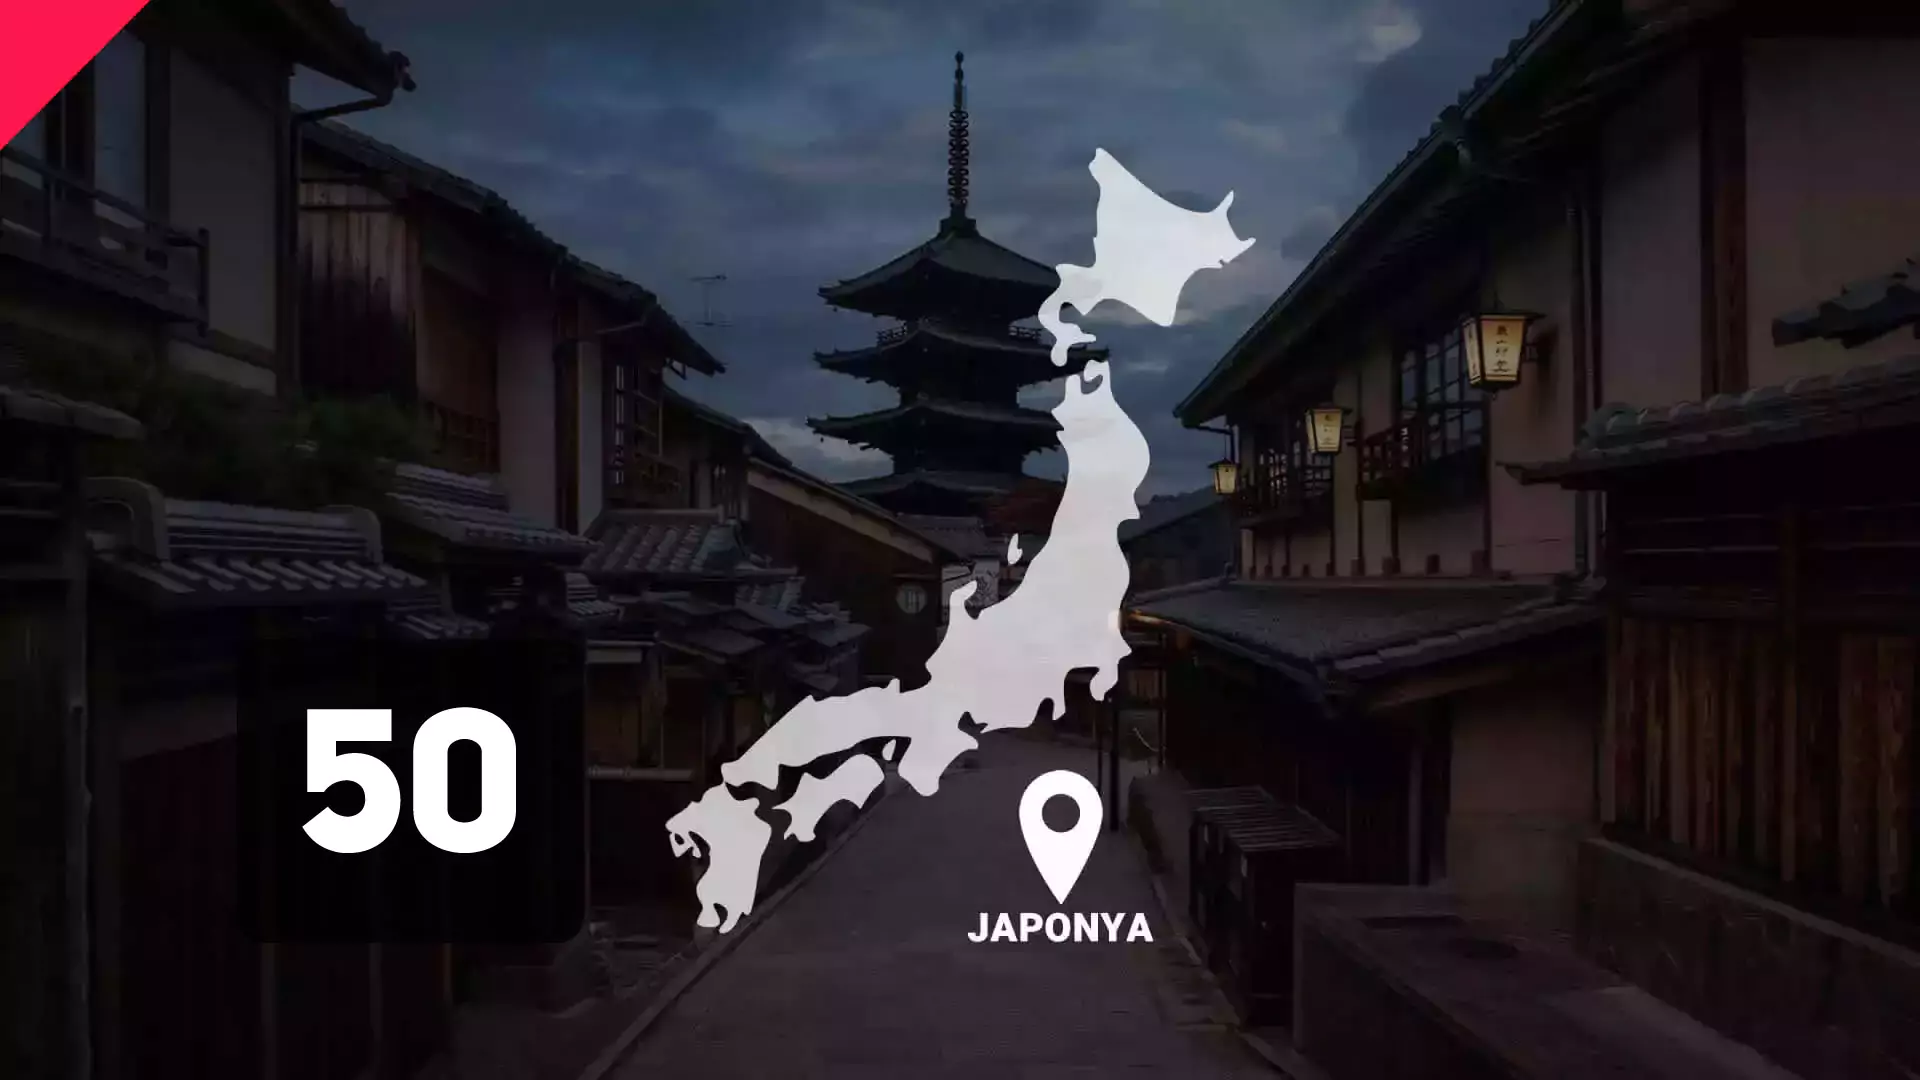 Japonca Dersi 50 Japonca Yasak, Birliktelik, -mak istemek, ken, -erek İfadeleri